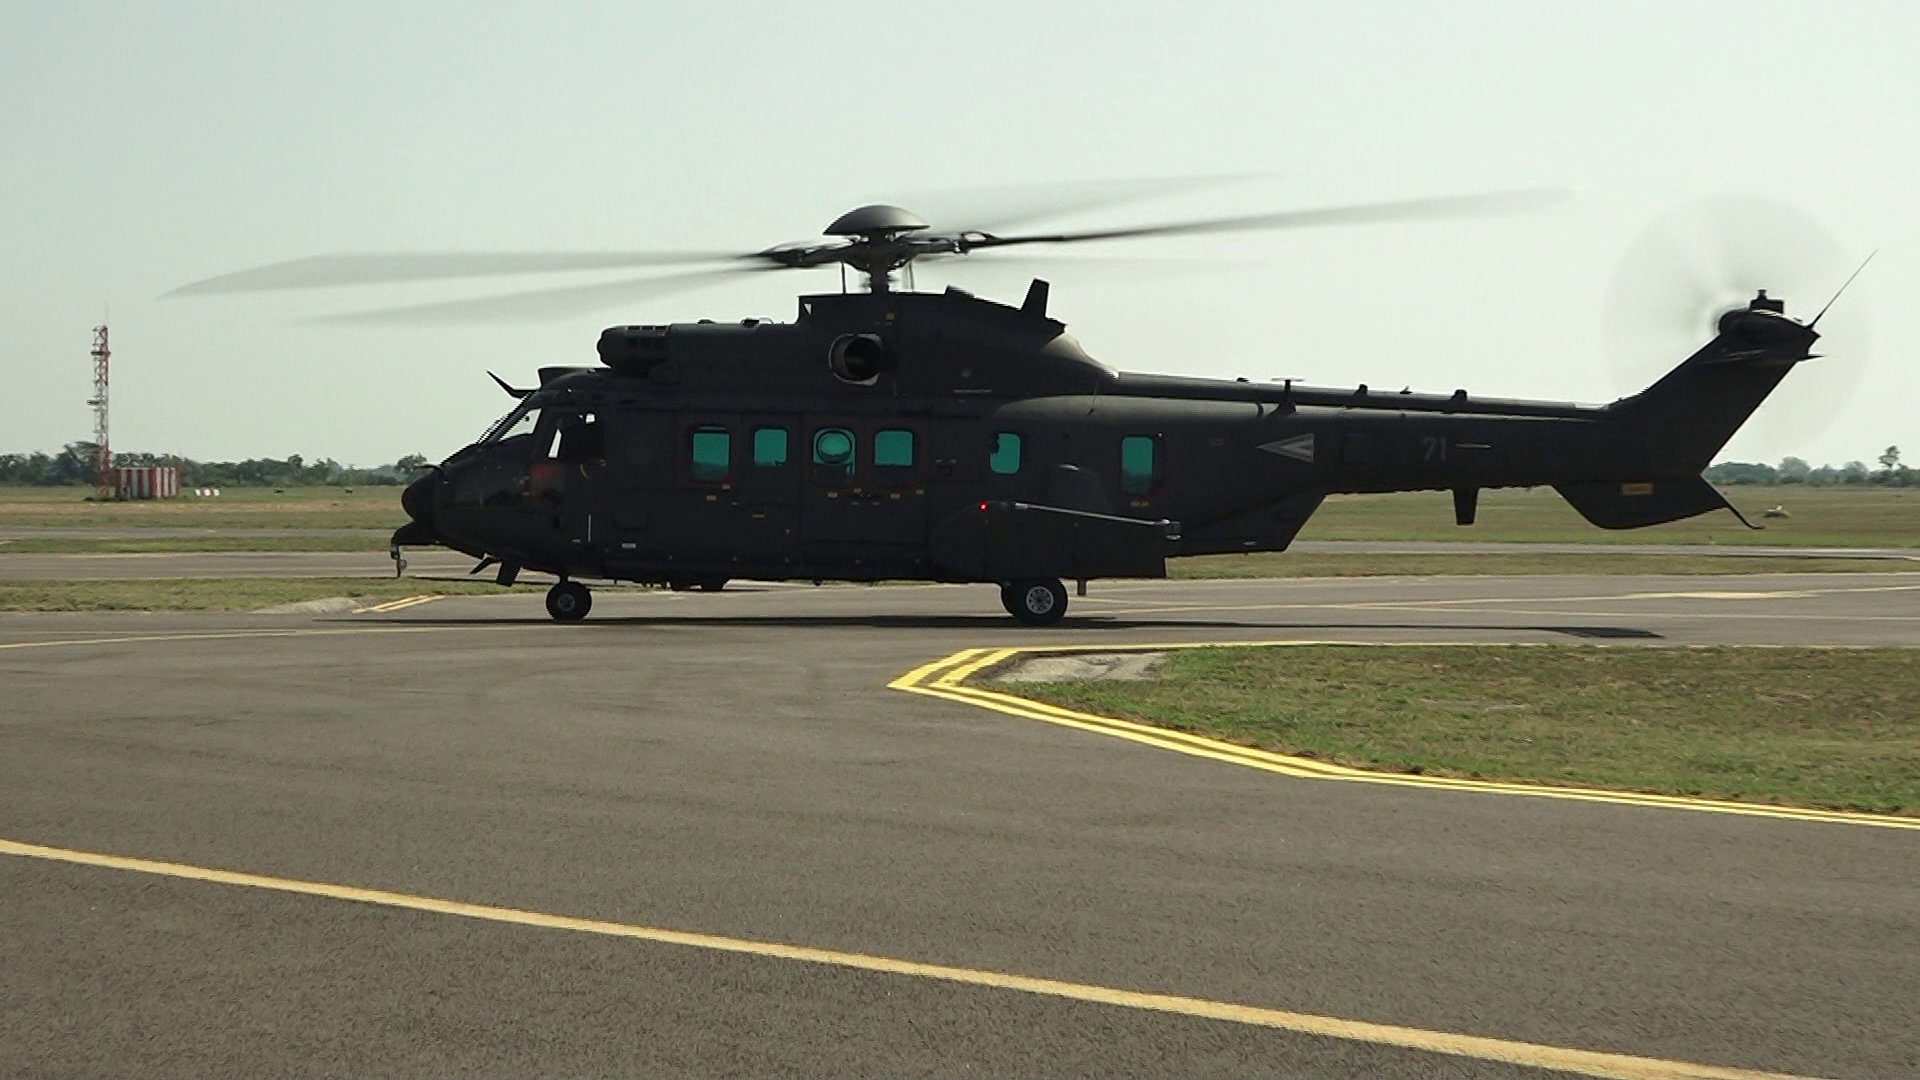 A magyar légierő számára kifejlesztett fegyverzettel felszerelt helikopterek érkeztek